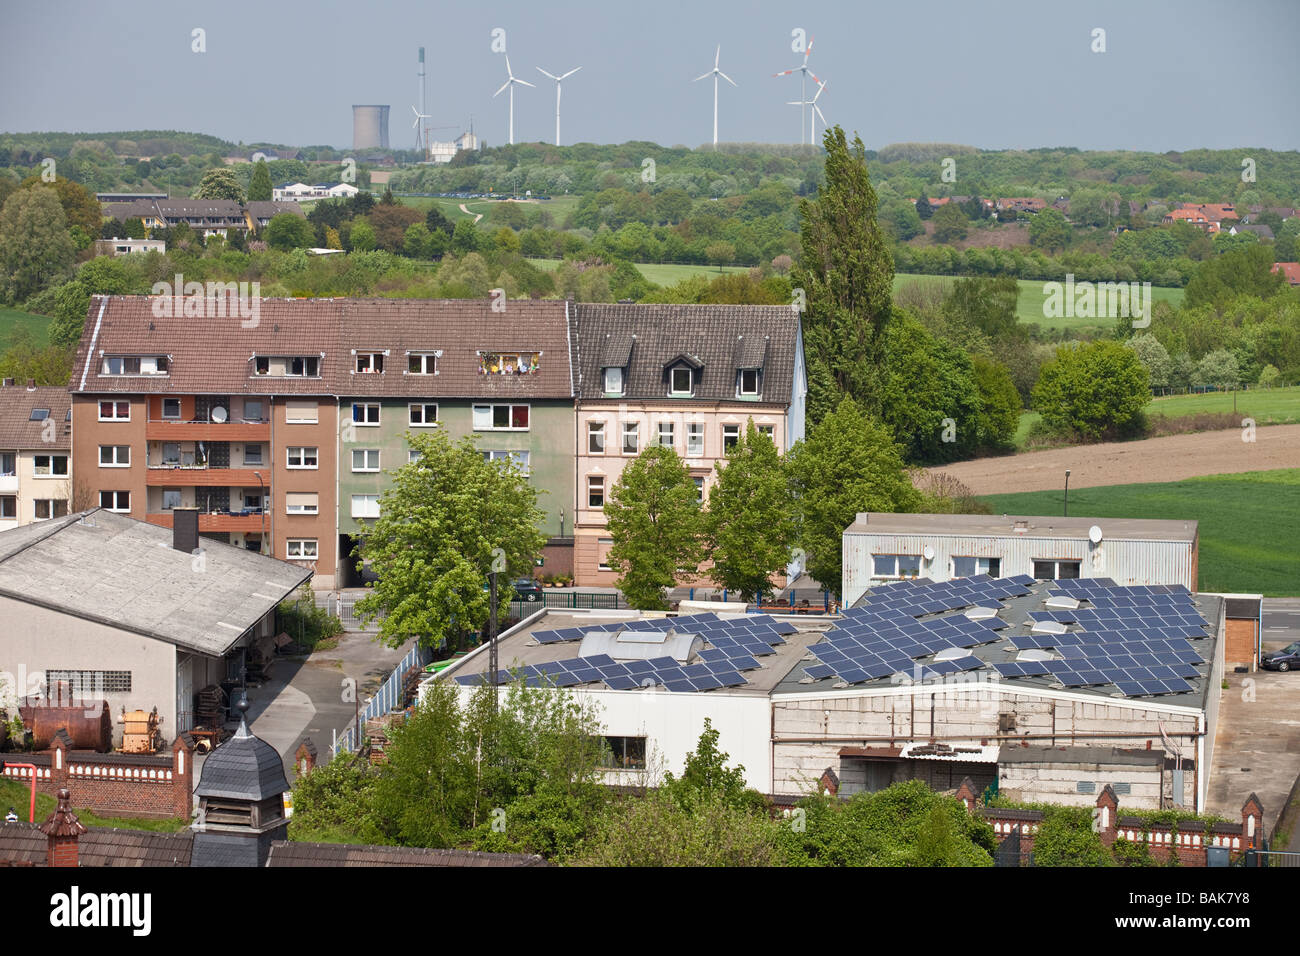 Landschaft mit Windrädern und Solarbatterien auf Dächern in Dortmund,  Deutschland Stockfotografie - Alamy